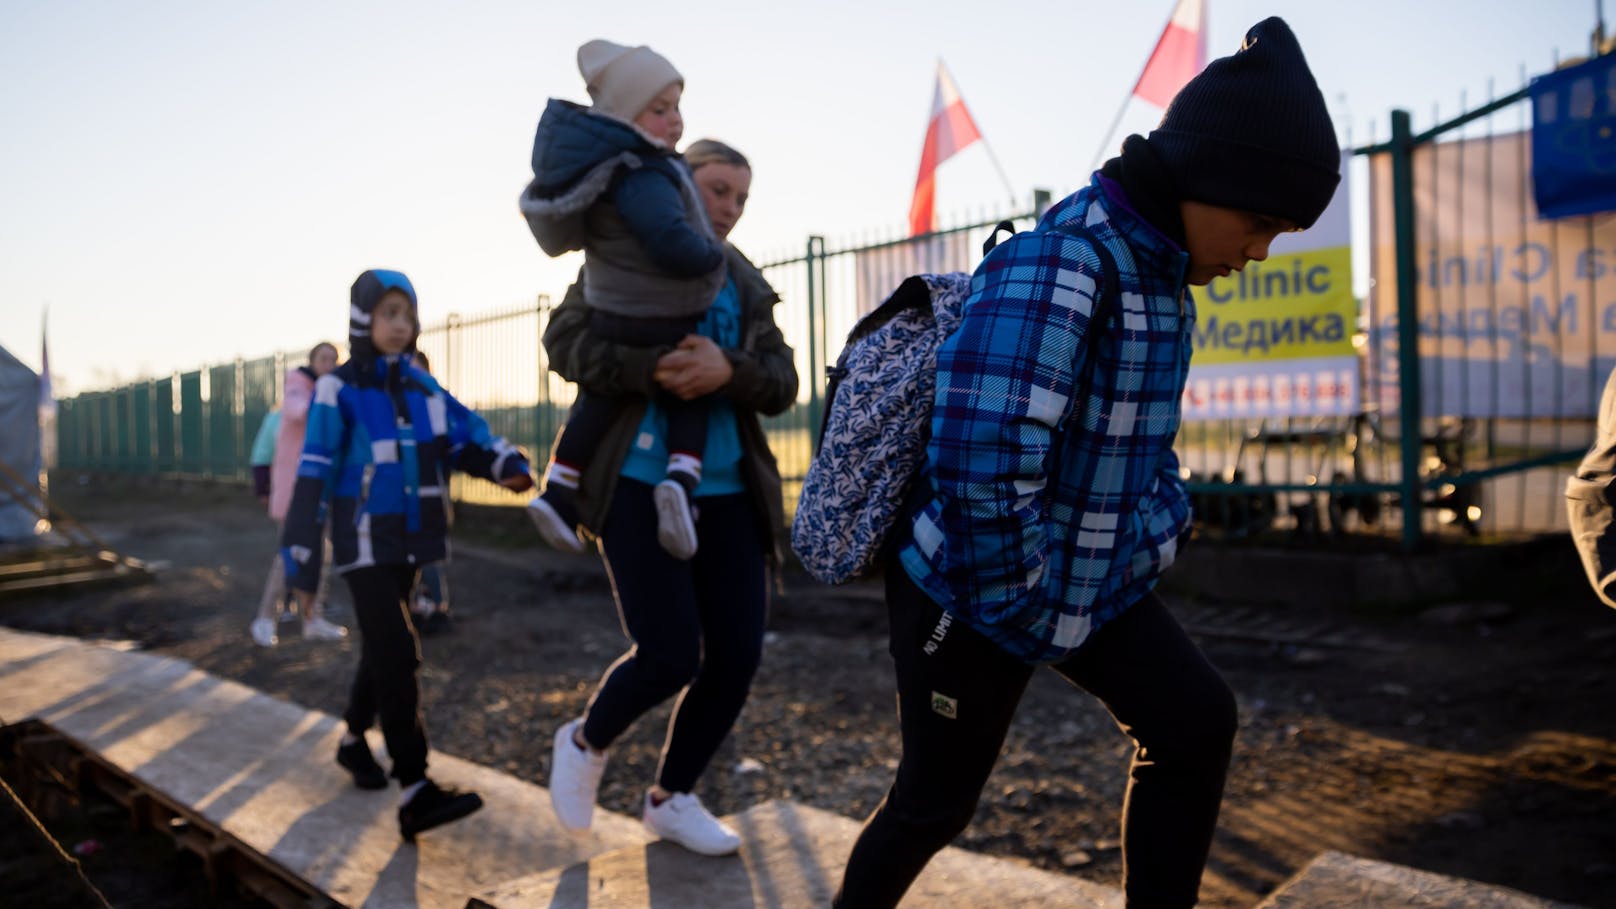 Russland und Belarus schleusen Migranten in die EU